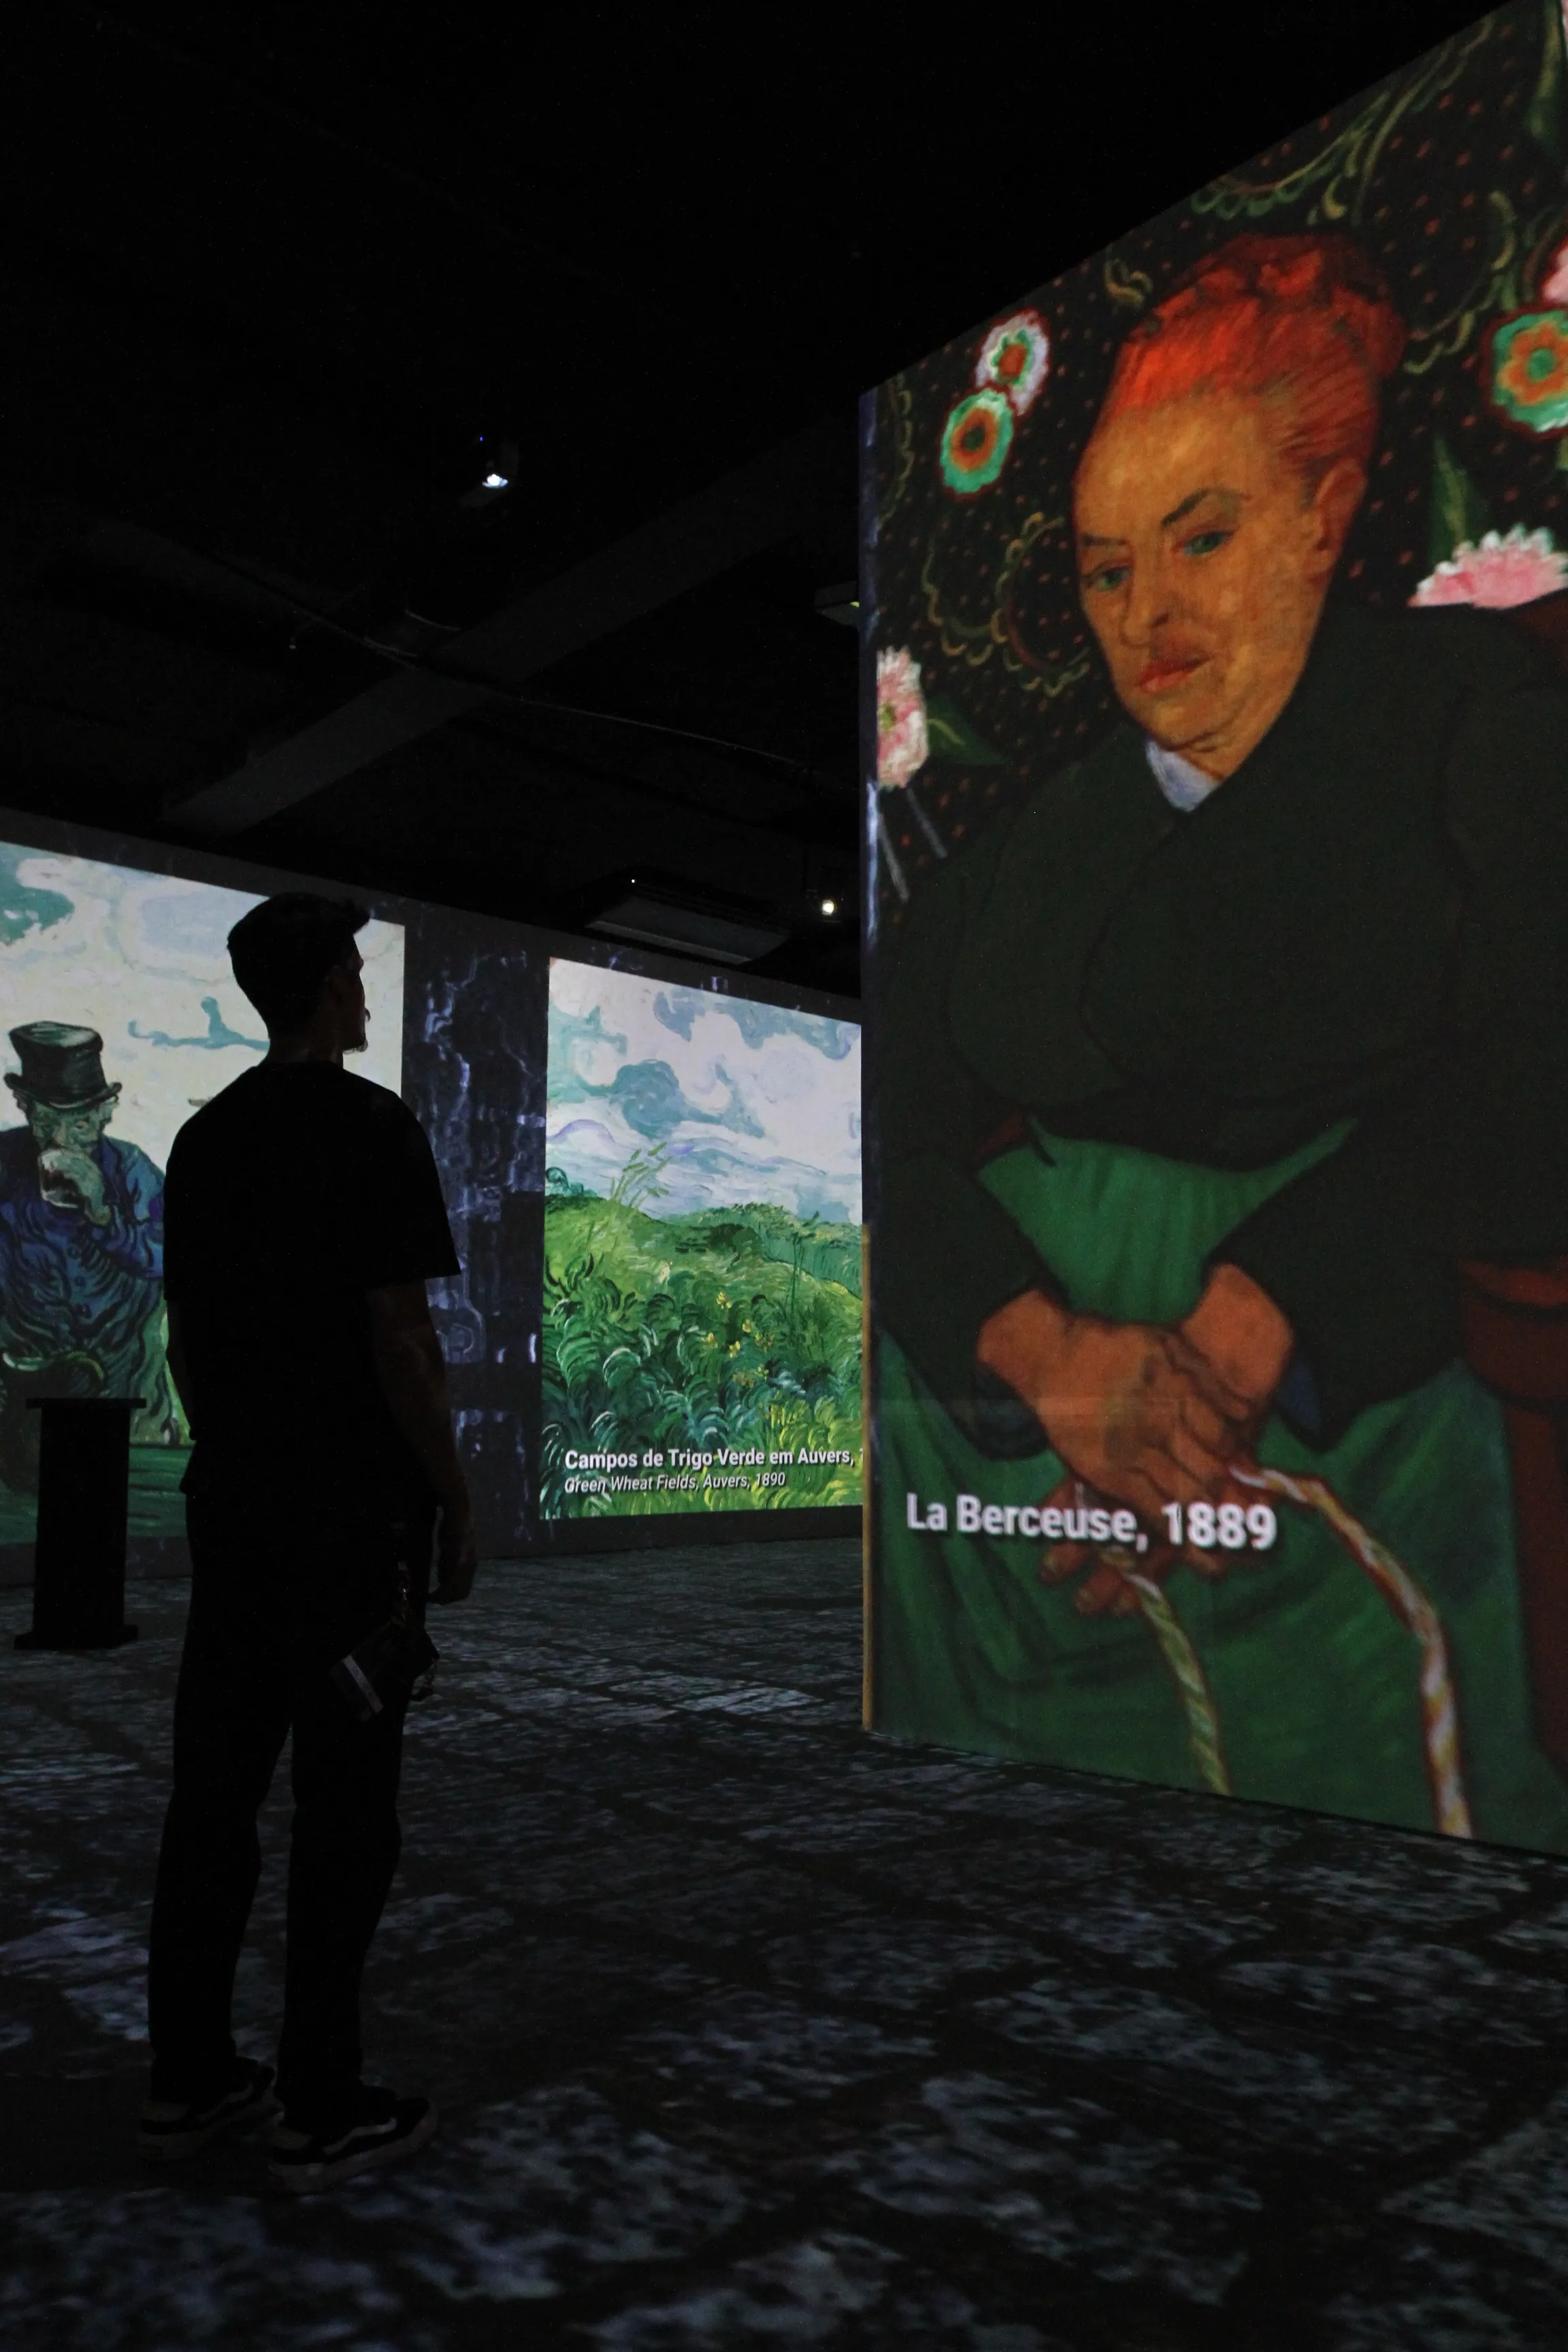 Imagem ilustrativa da imagem Vitória recebe exposição com obras de Van Gogh